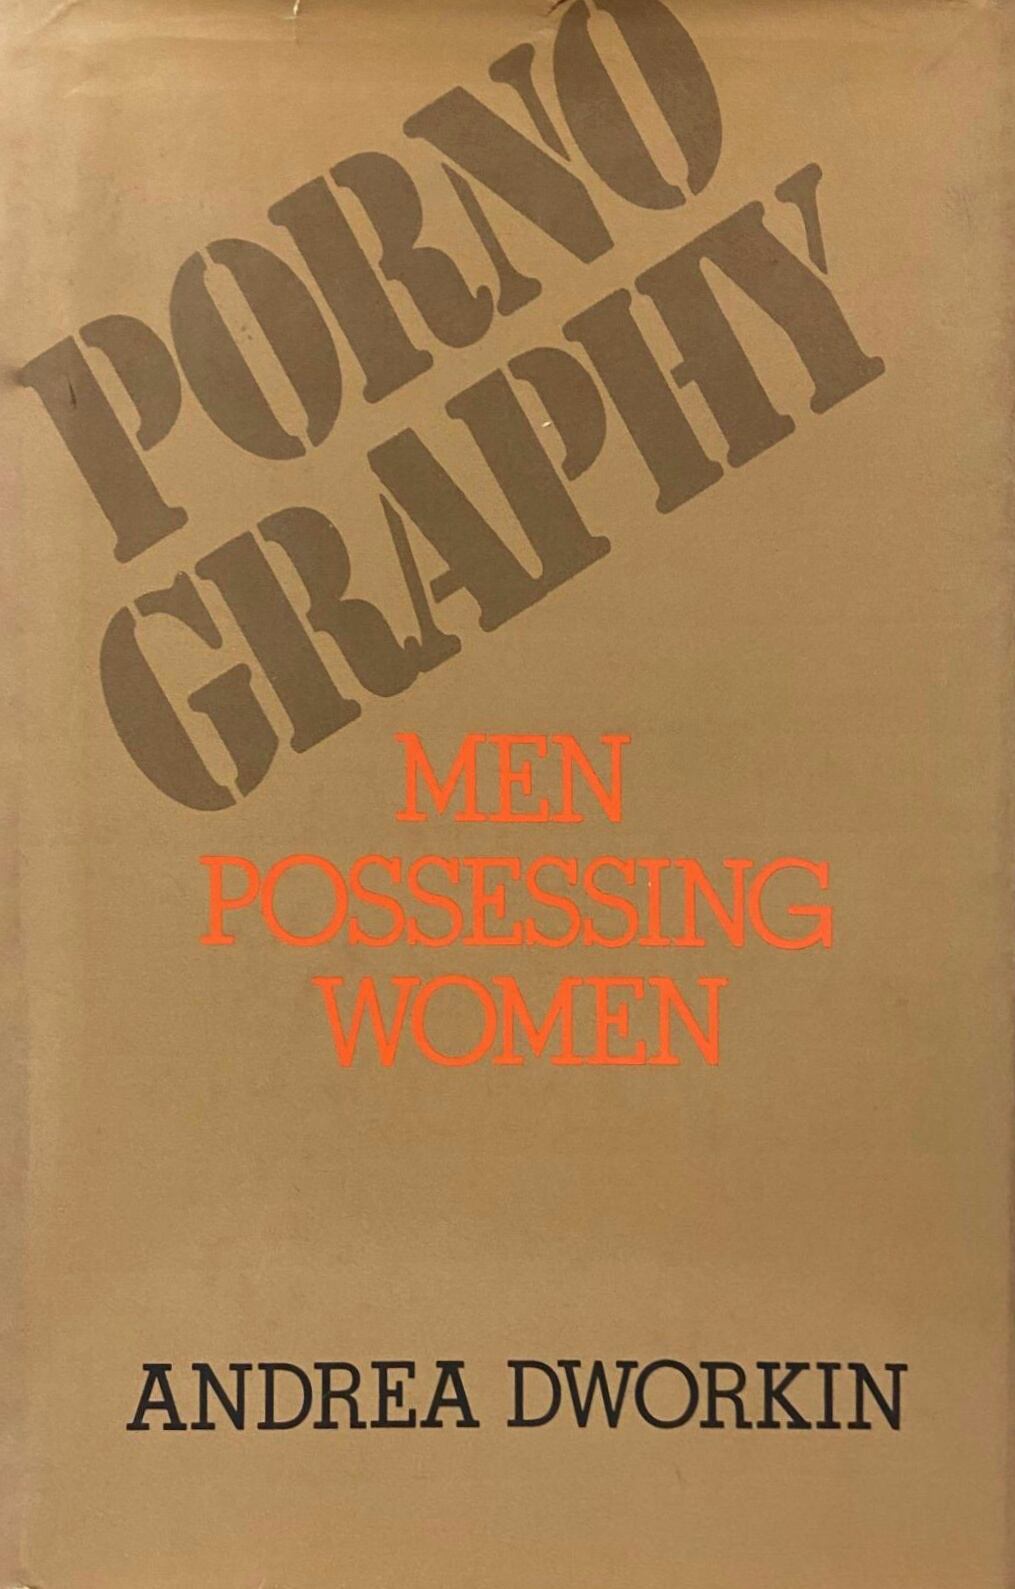 La portada de 'Pornografía, hombres poseyendo a mujeres'.